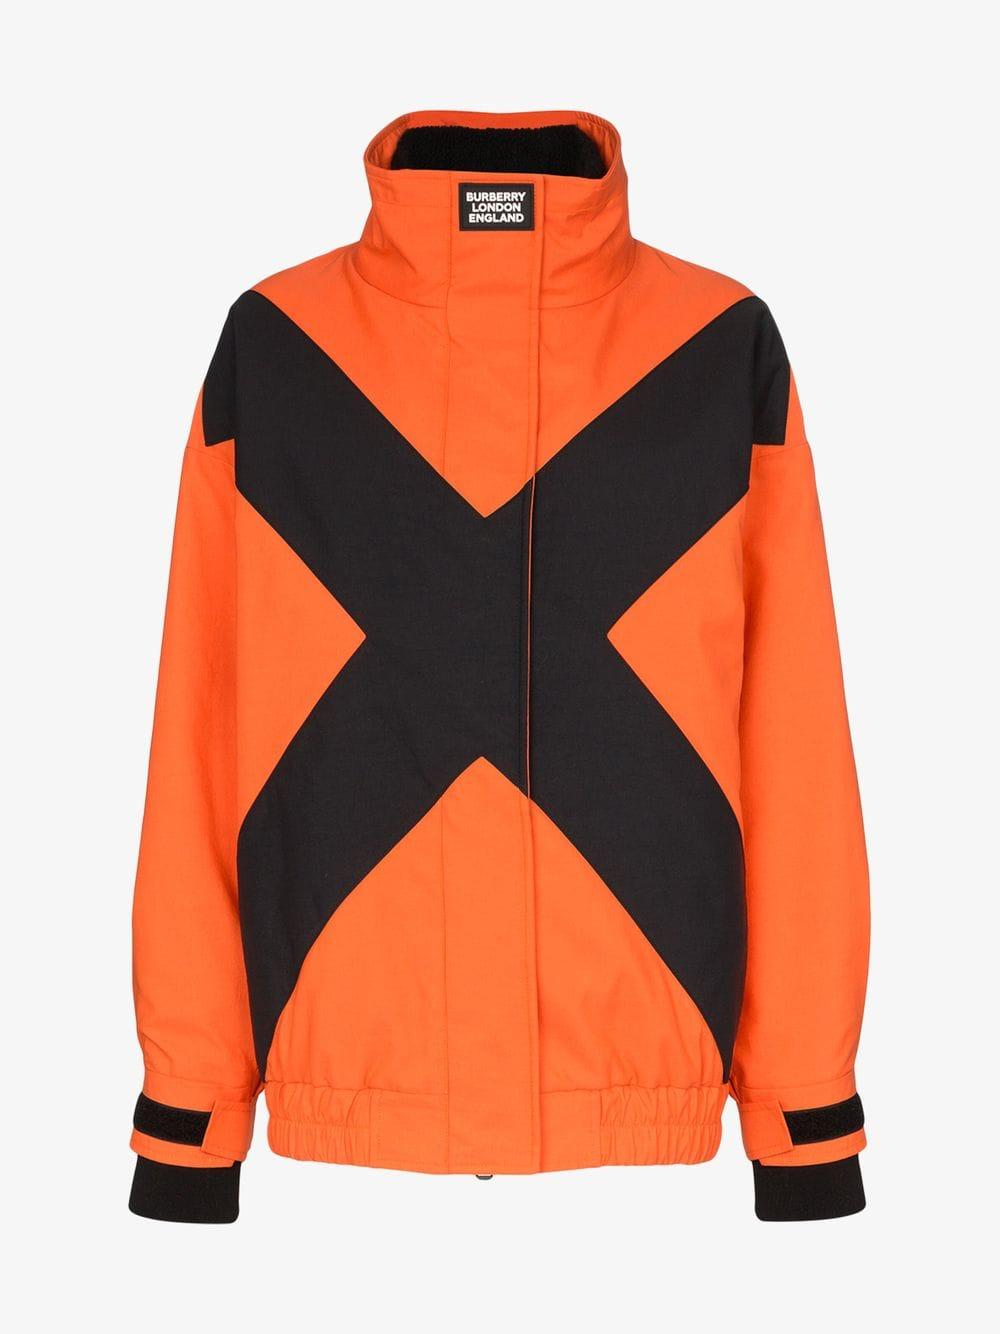 Burberry Fleece Two-tone Track Jacket in Orange | Lyst